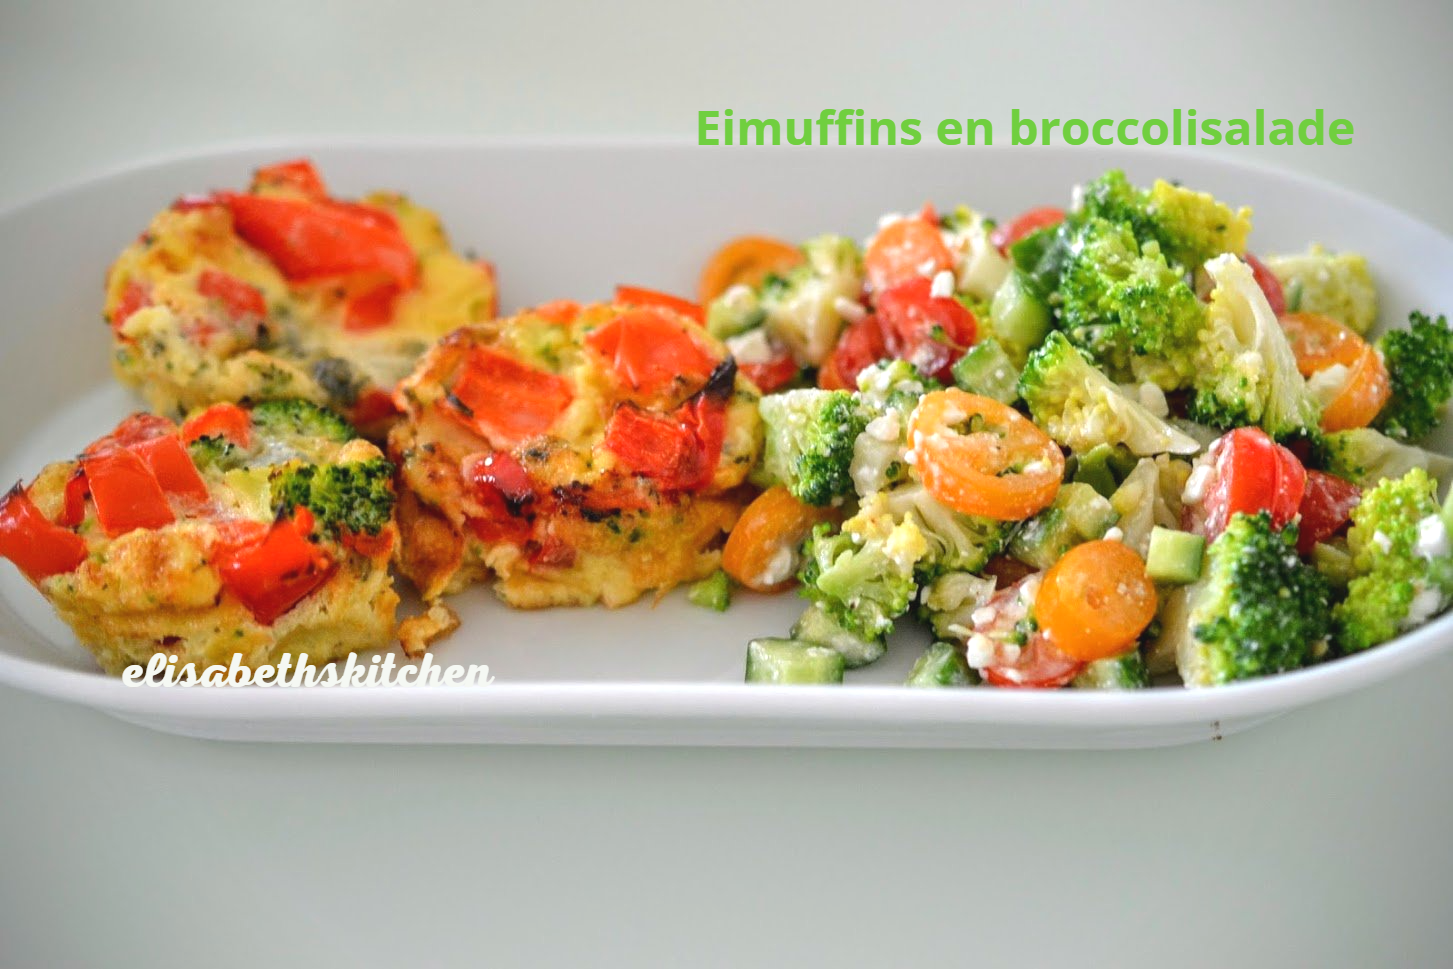 Eimuffins en broccolisalade